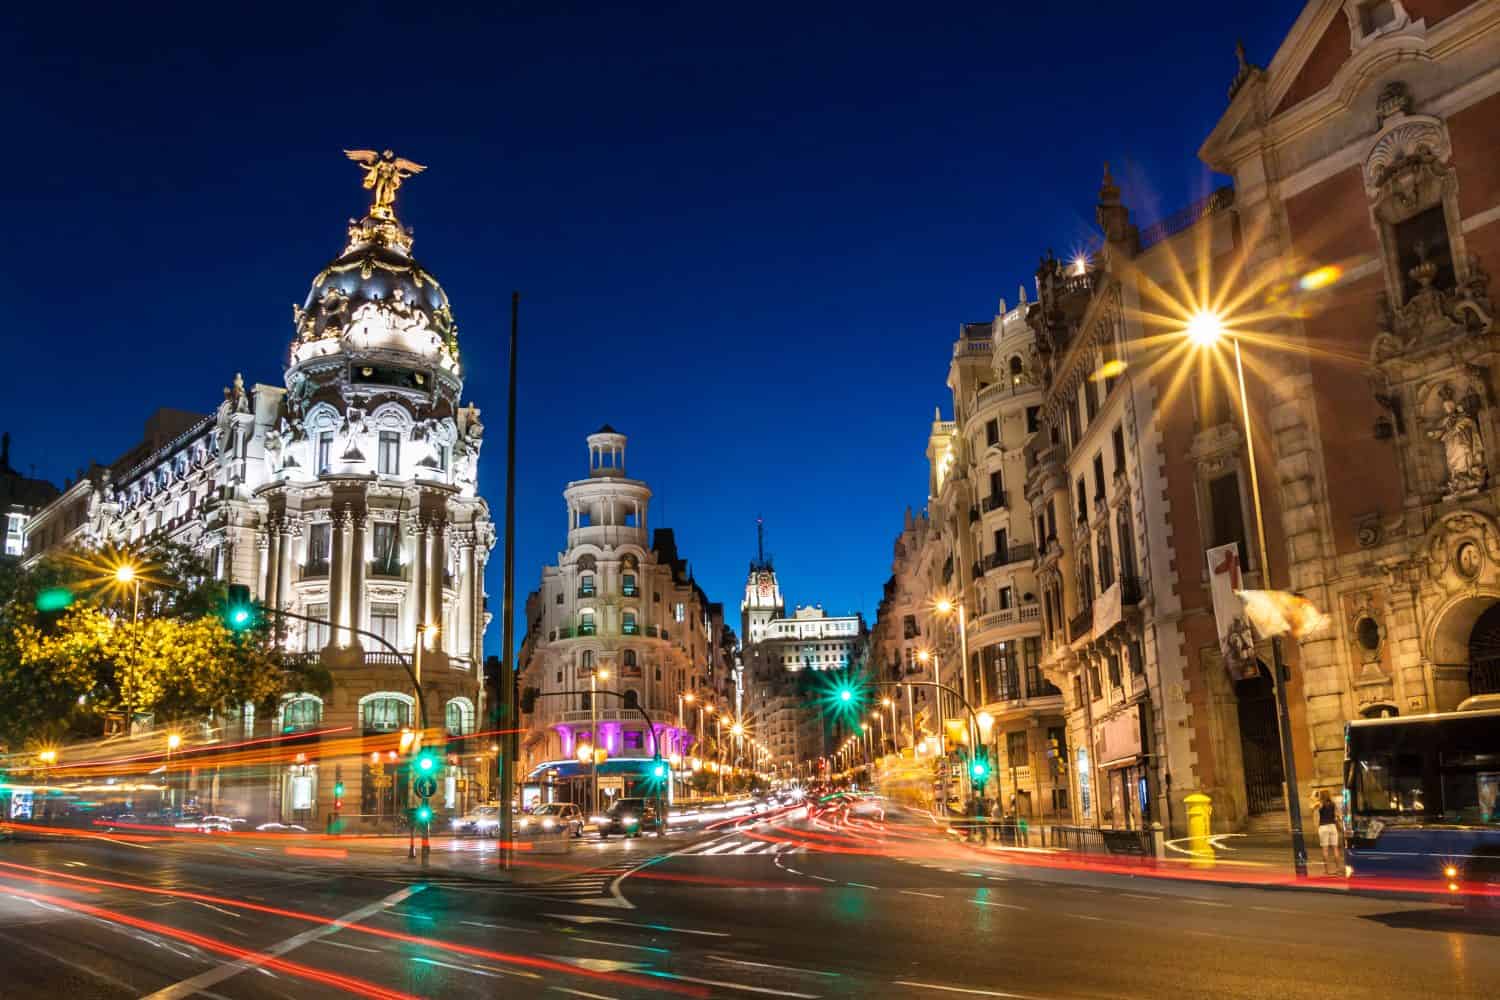 Raggi di semafori sulla Gran Via, la principale via dello shopping di Madrid di notte.  Spagna, Europa.